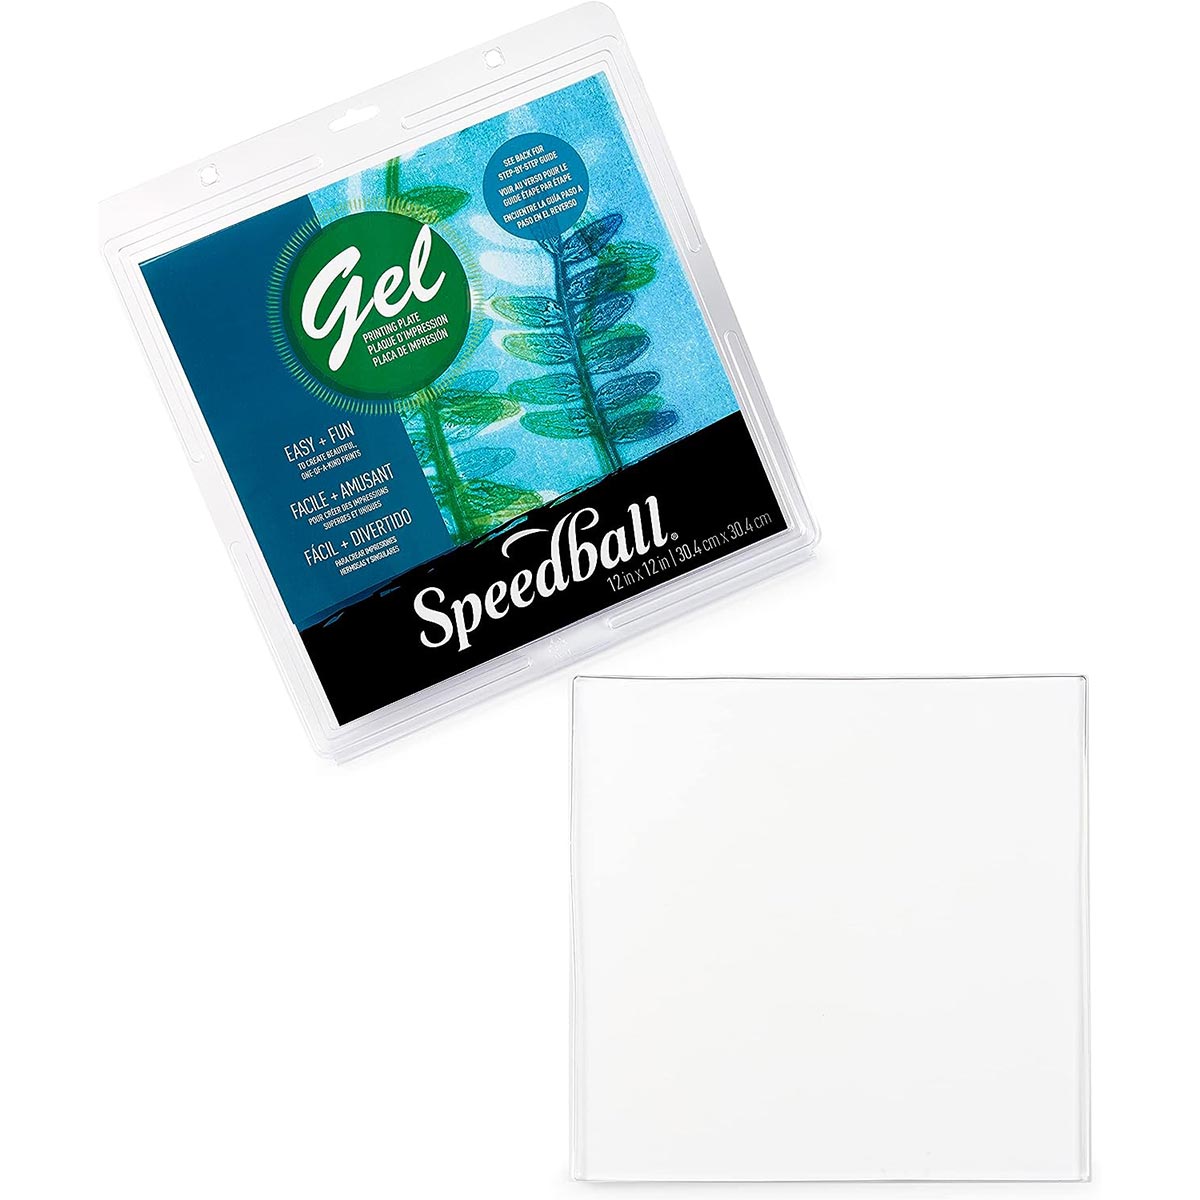 Speedball - Plaque d'impression en gel 12 x 12 pouces - 30 x 30 cm